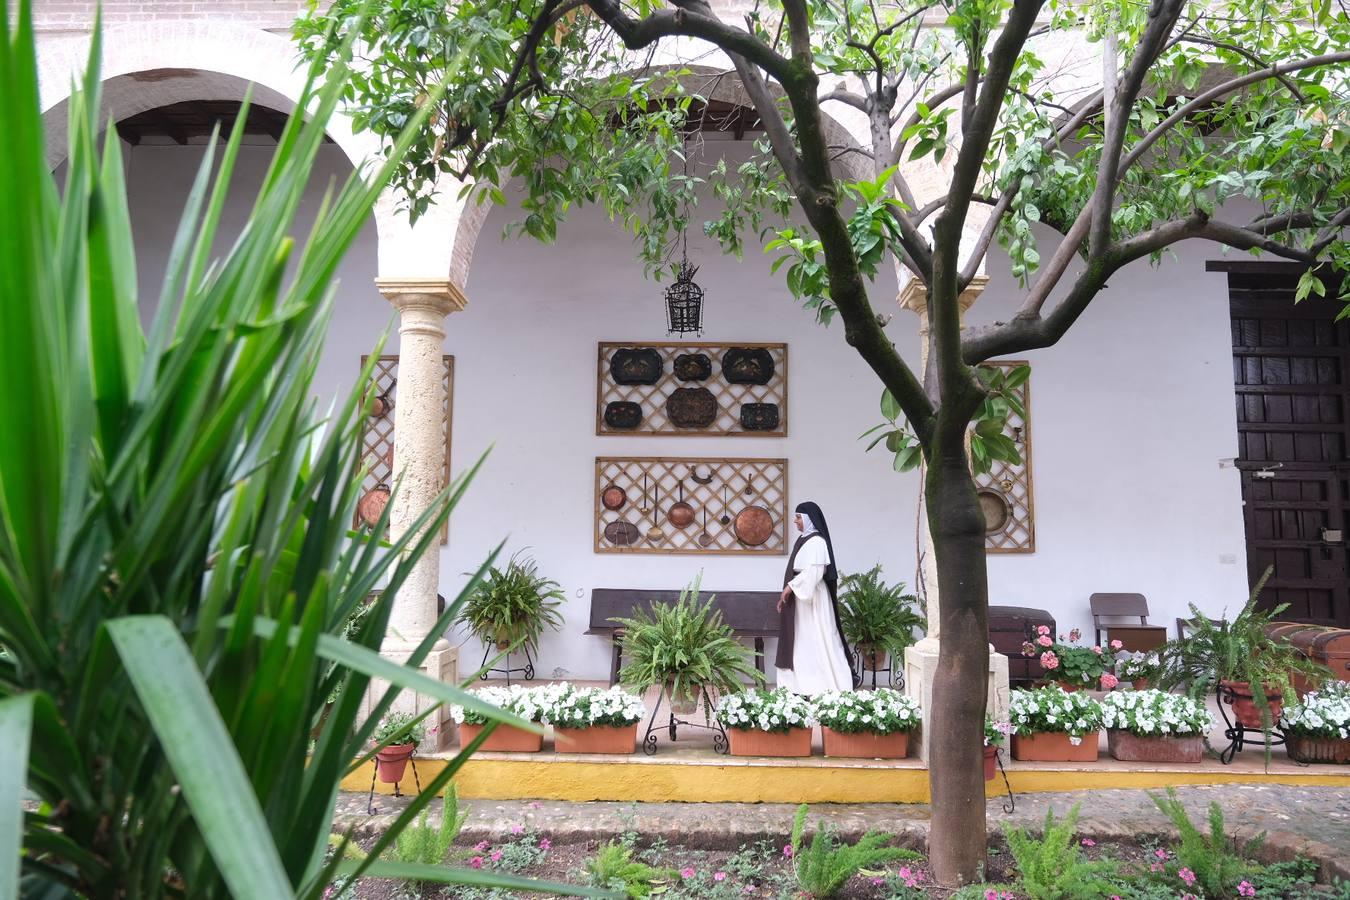 Patios Córdoba 2021 | El patio de clausura de Santa Marta, en imágenes